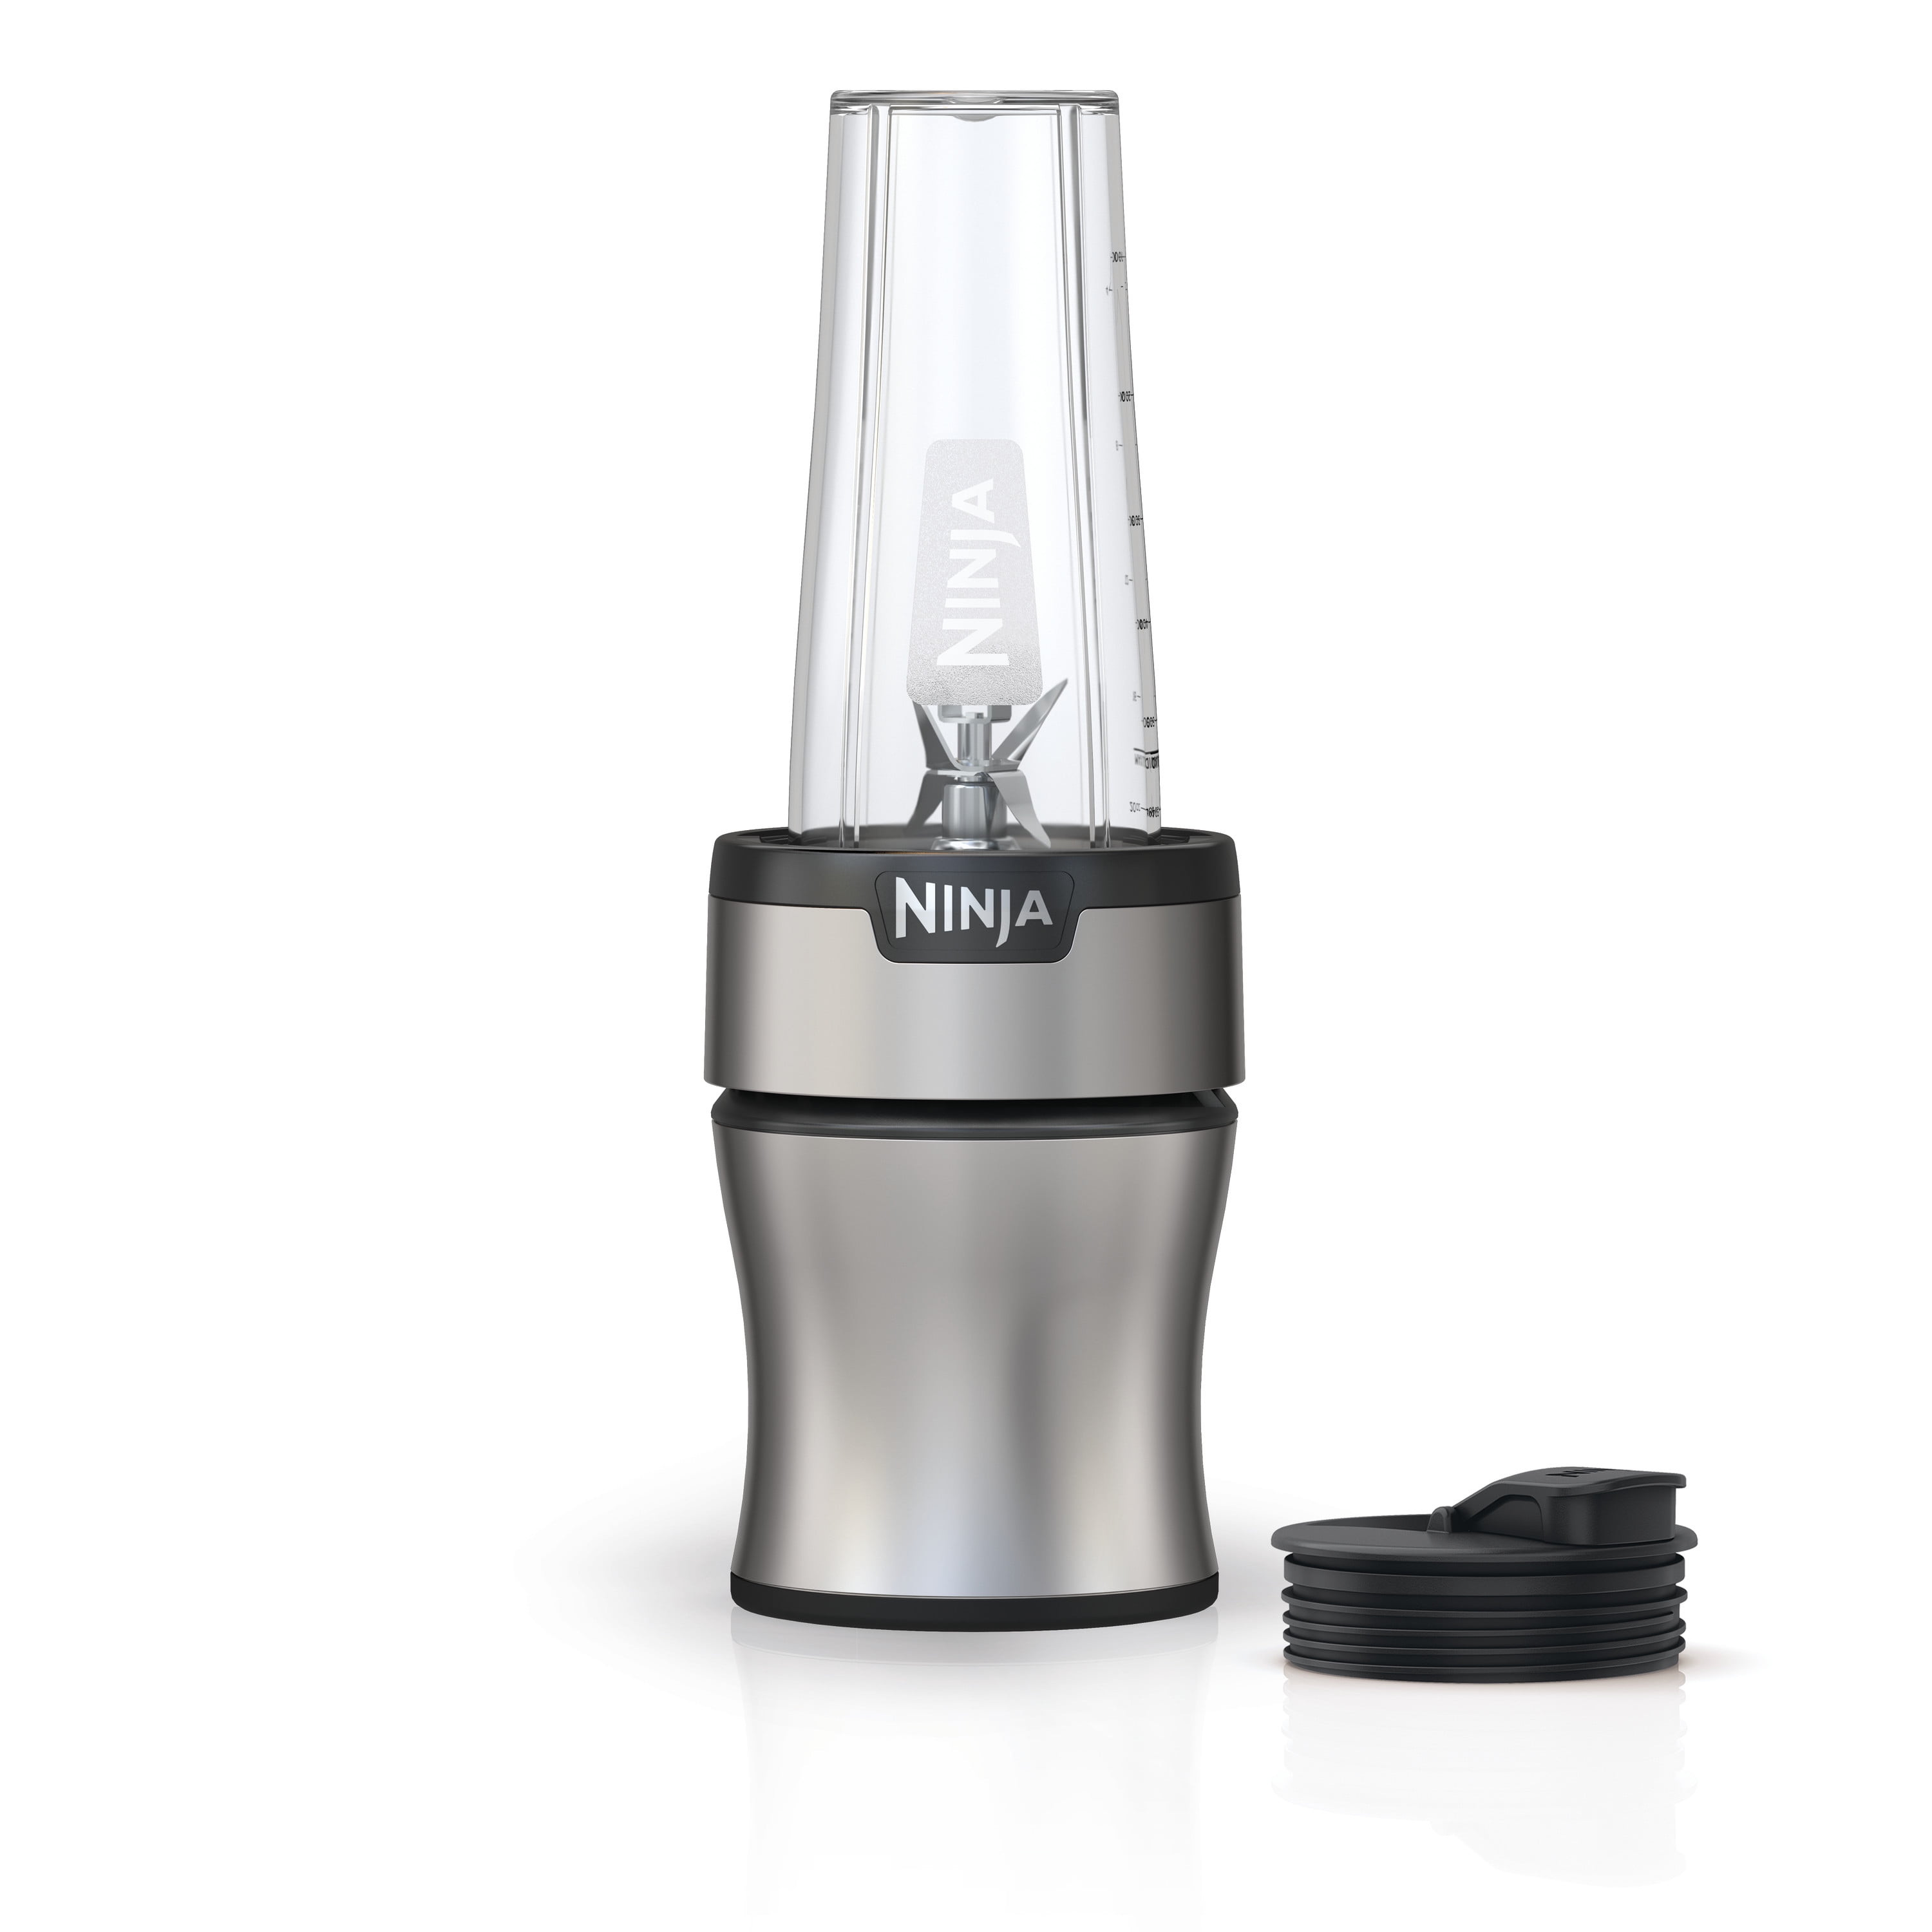 Euro Pro Ninja Nutri-Blender Plus in Stainless Steel